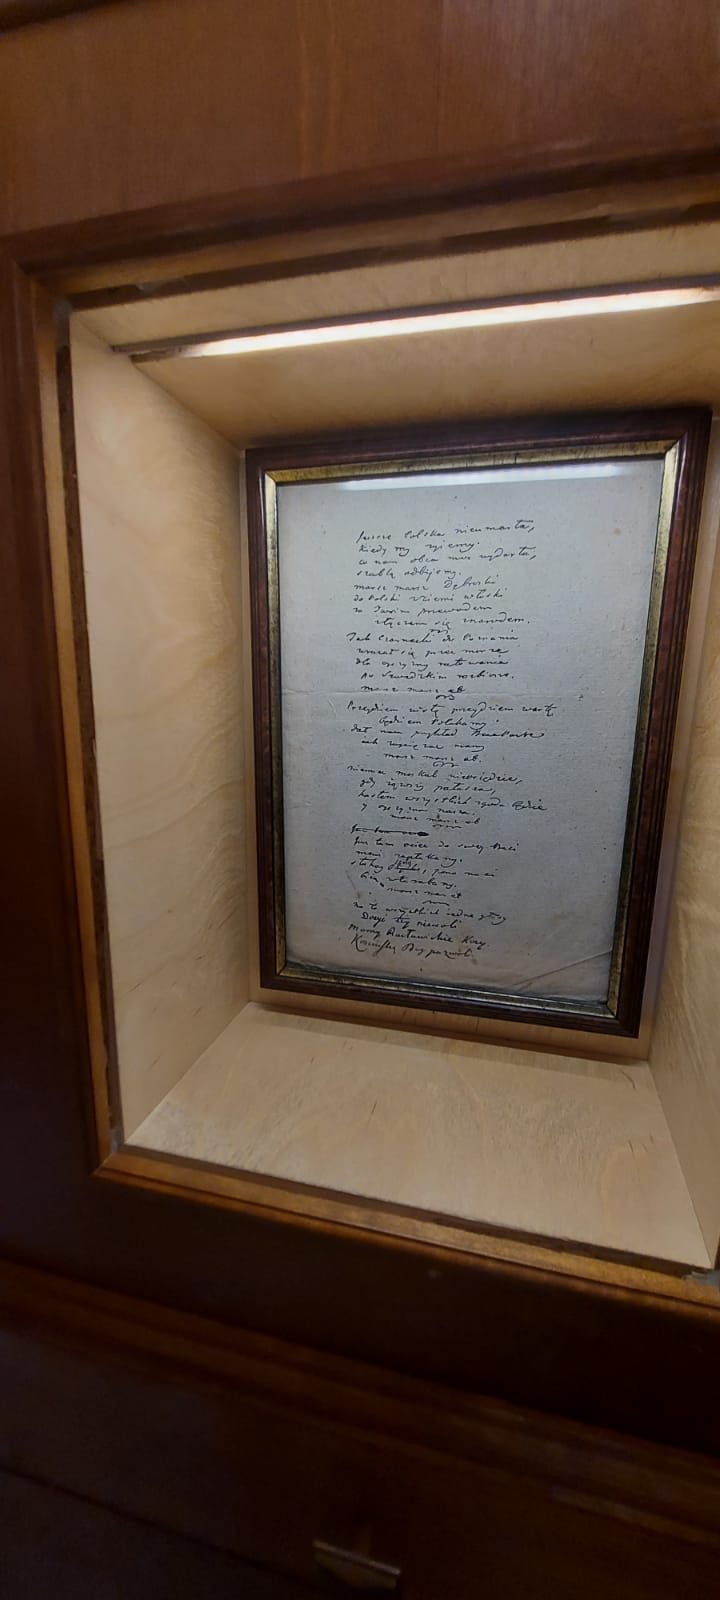 Odręczne pismo umieszczone w obrazie wisi w gablocie na ścianie.
